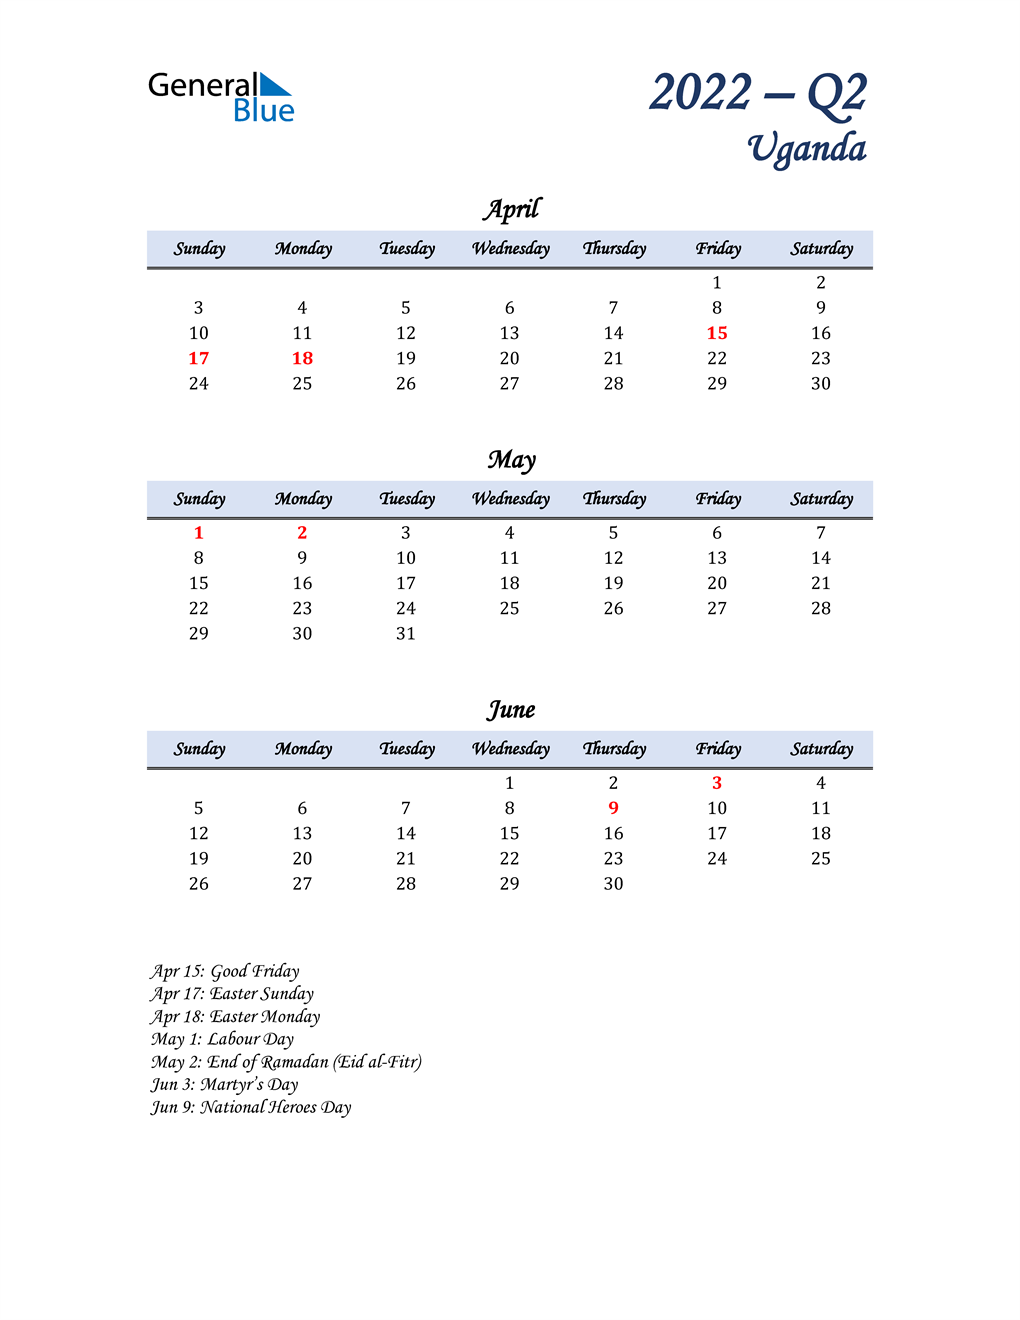  April, May, and June Calendar for Uganda